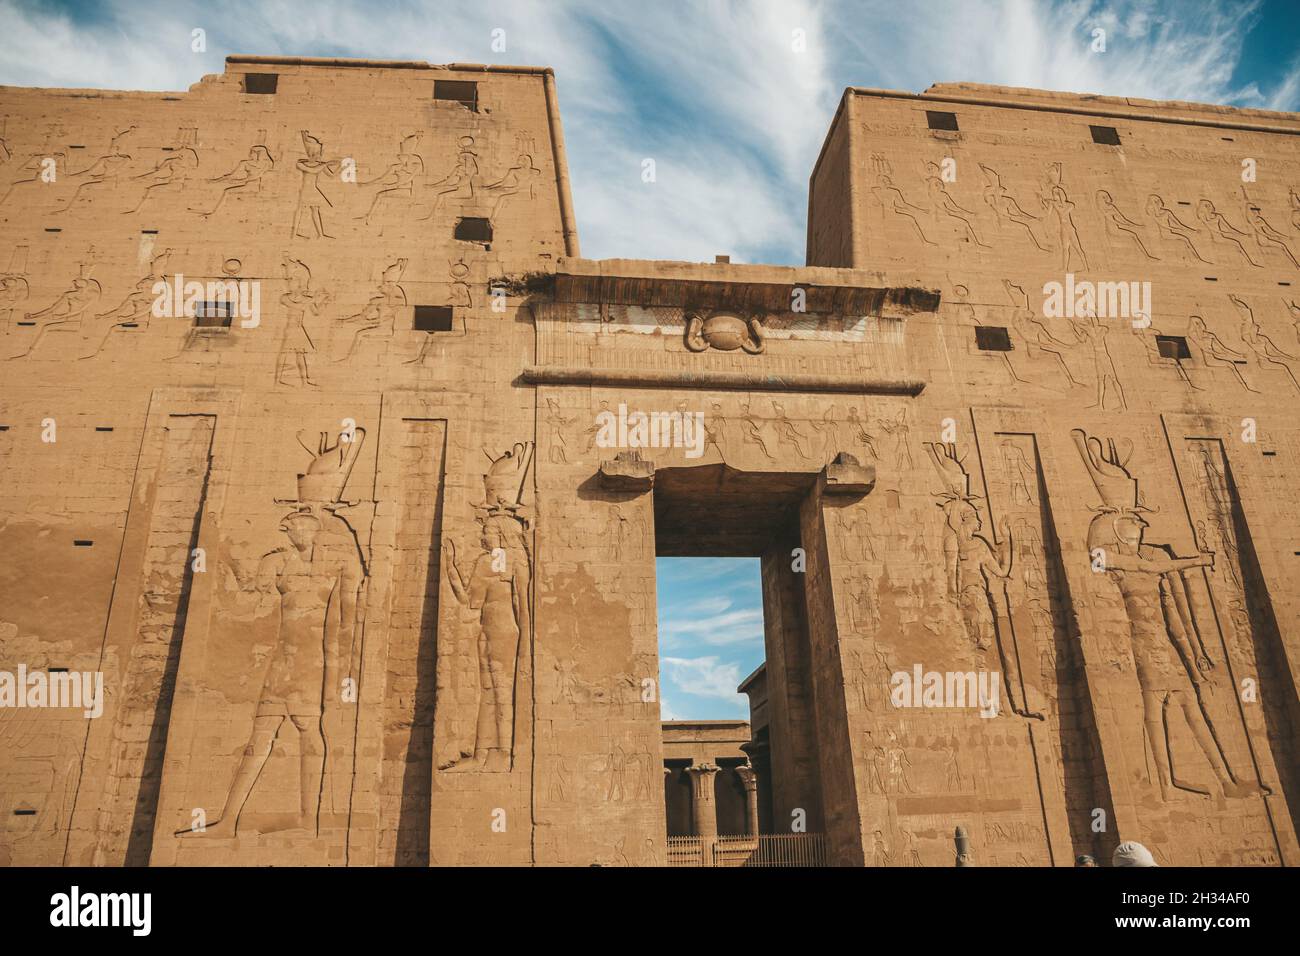 Les ruines de l'ancien temple d'Horus à Edfu, en Égypte Banque D'Images